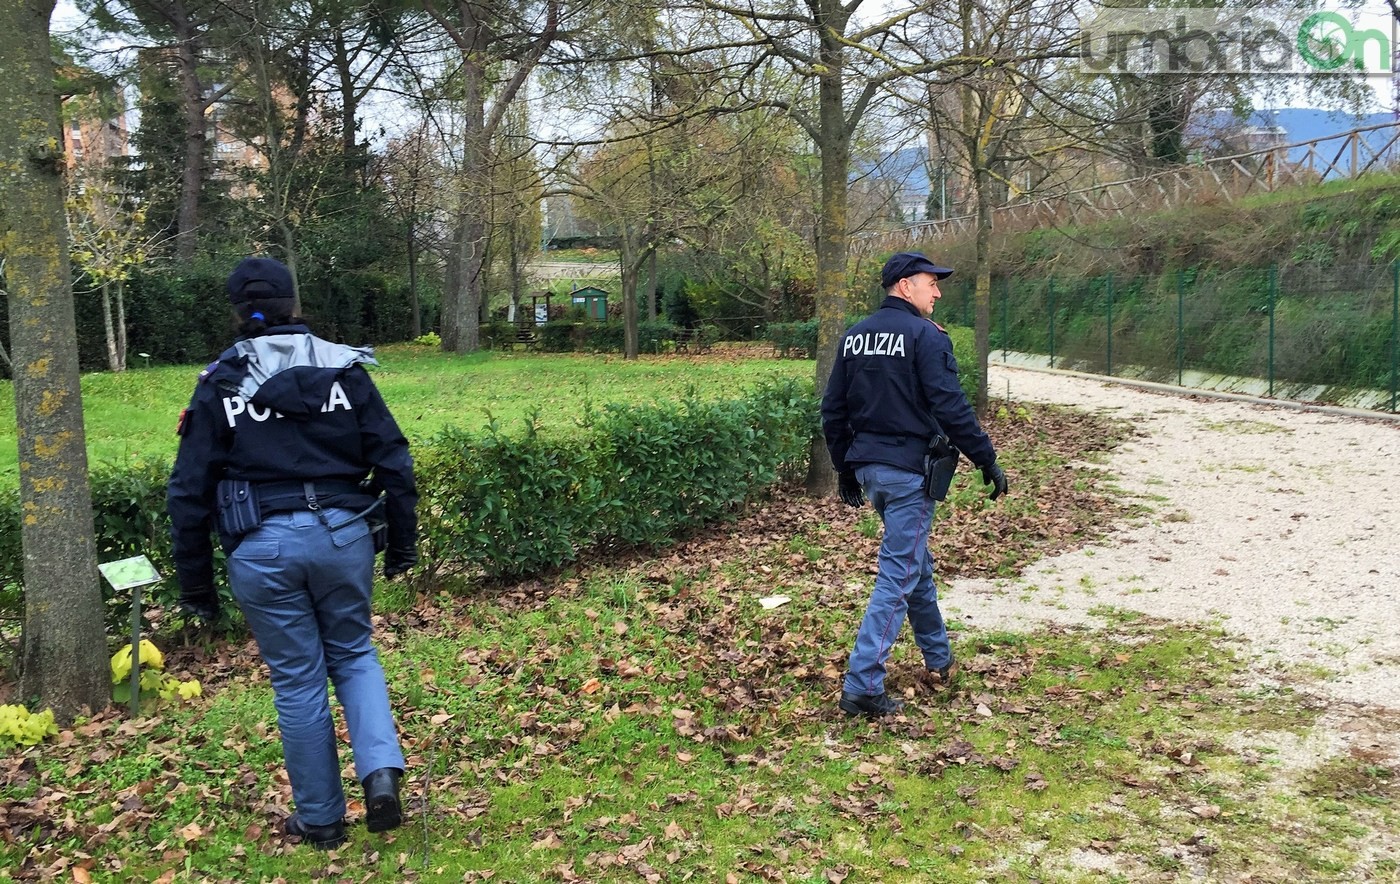 Parco fluviale urbano San Martino, polizia Volante. Controlli droga degrado - 2 dicembre 2016 (21)